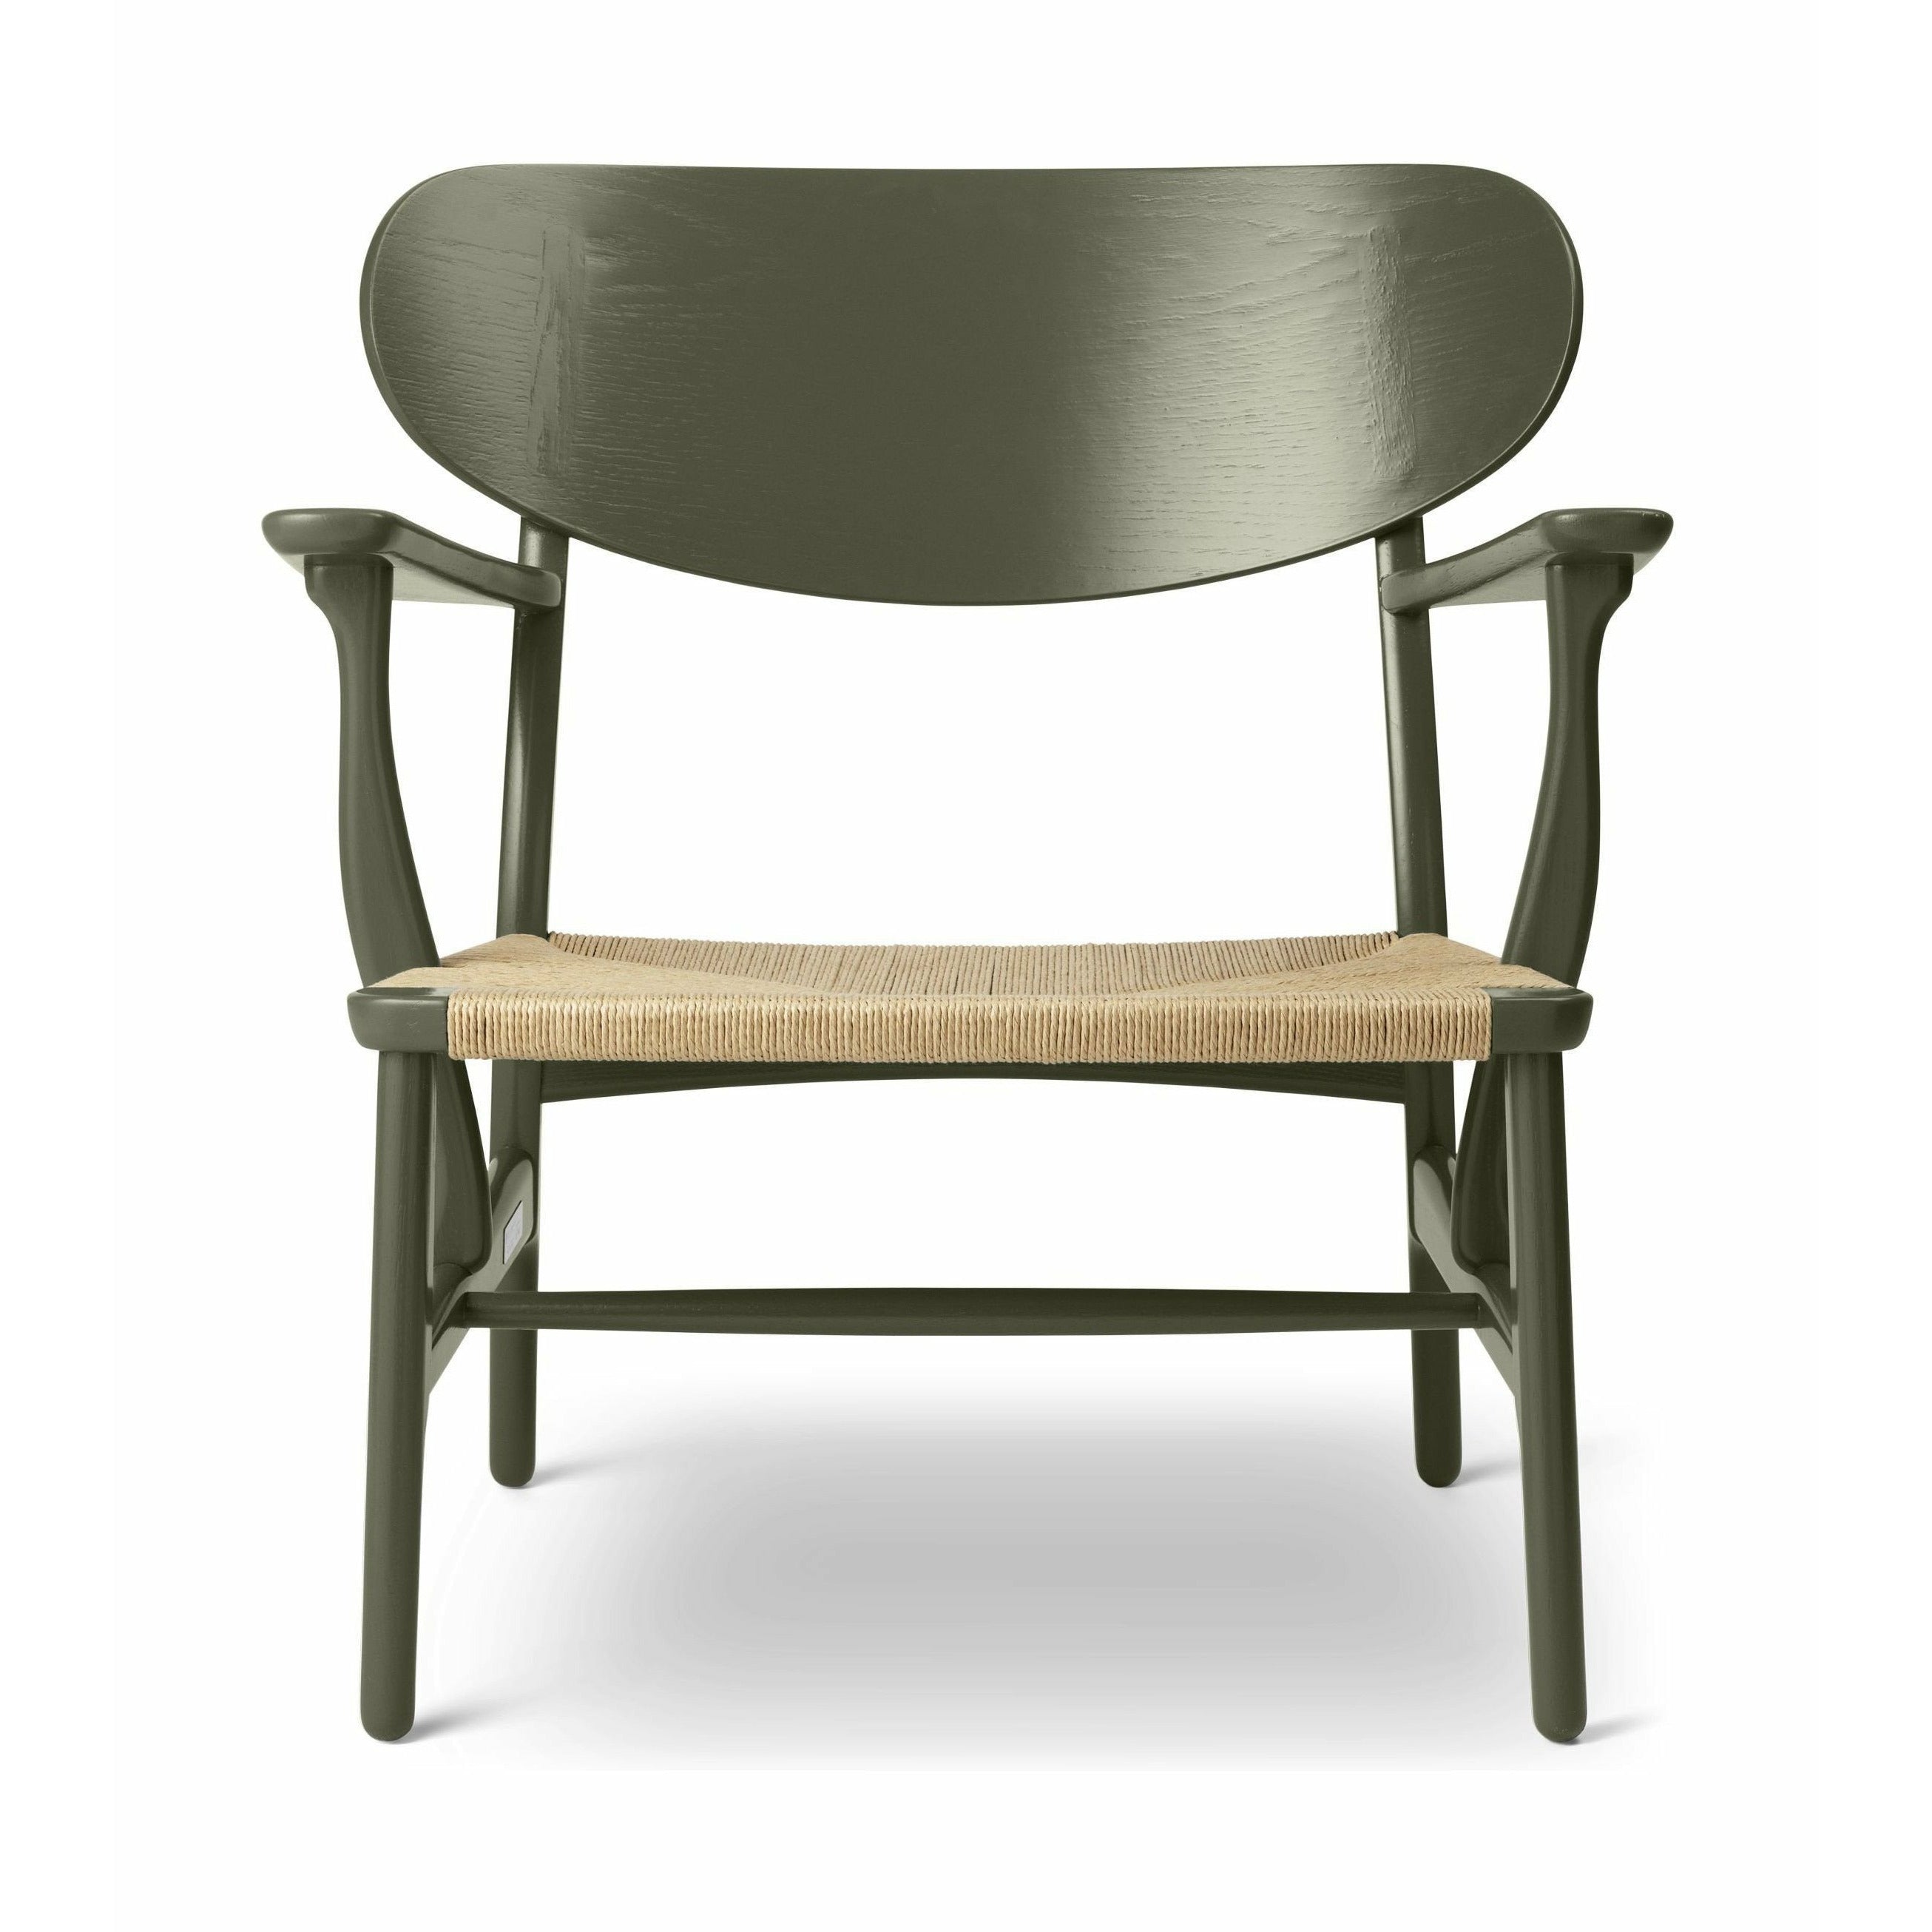 Carl Hansen CH22 Lounge Chair Oak, tånggrön/naturfusion - Specialutgåva